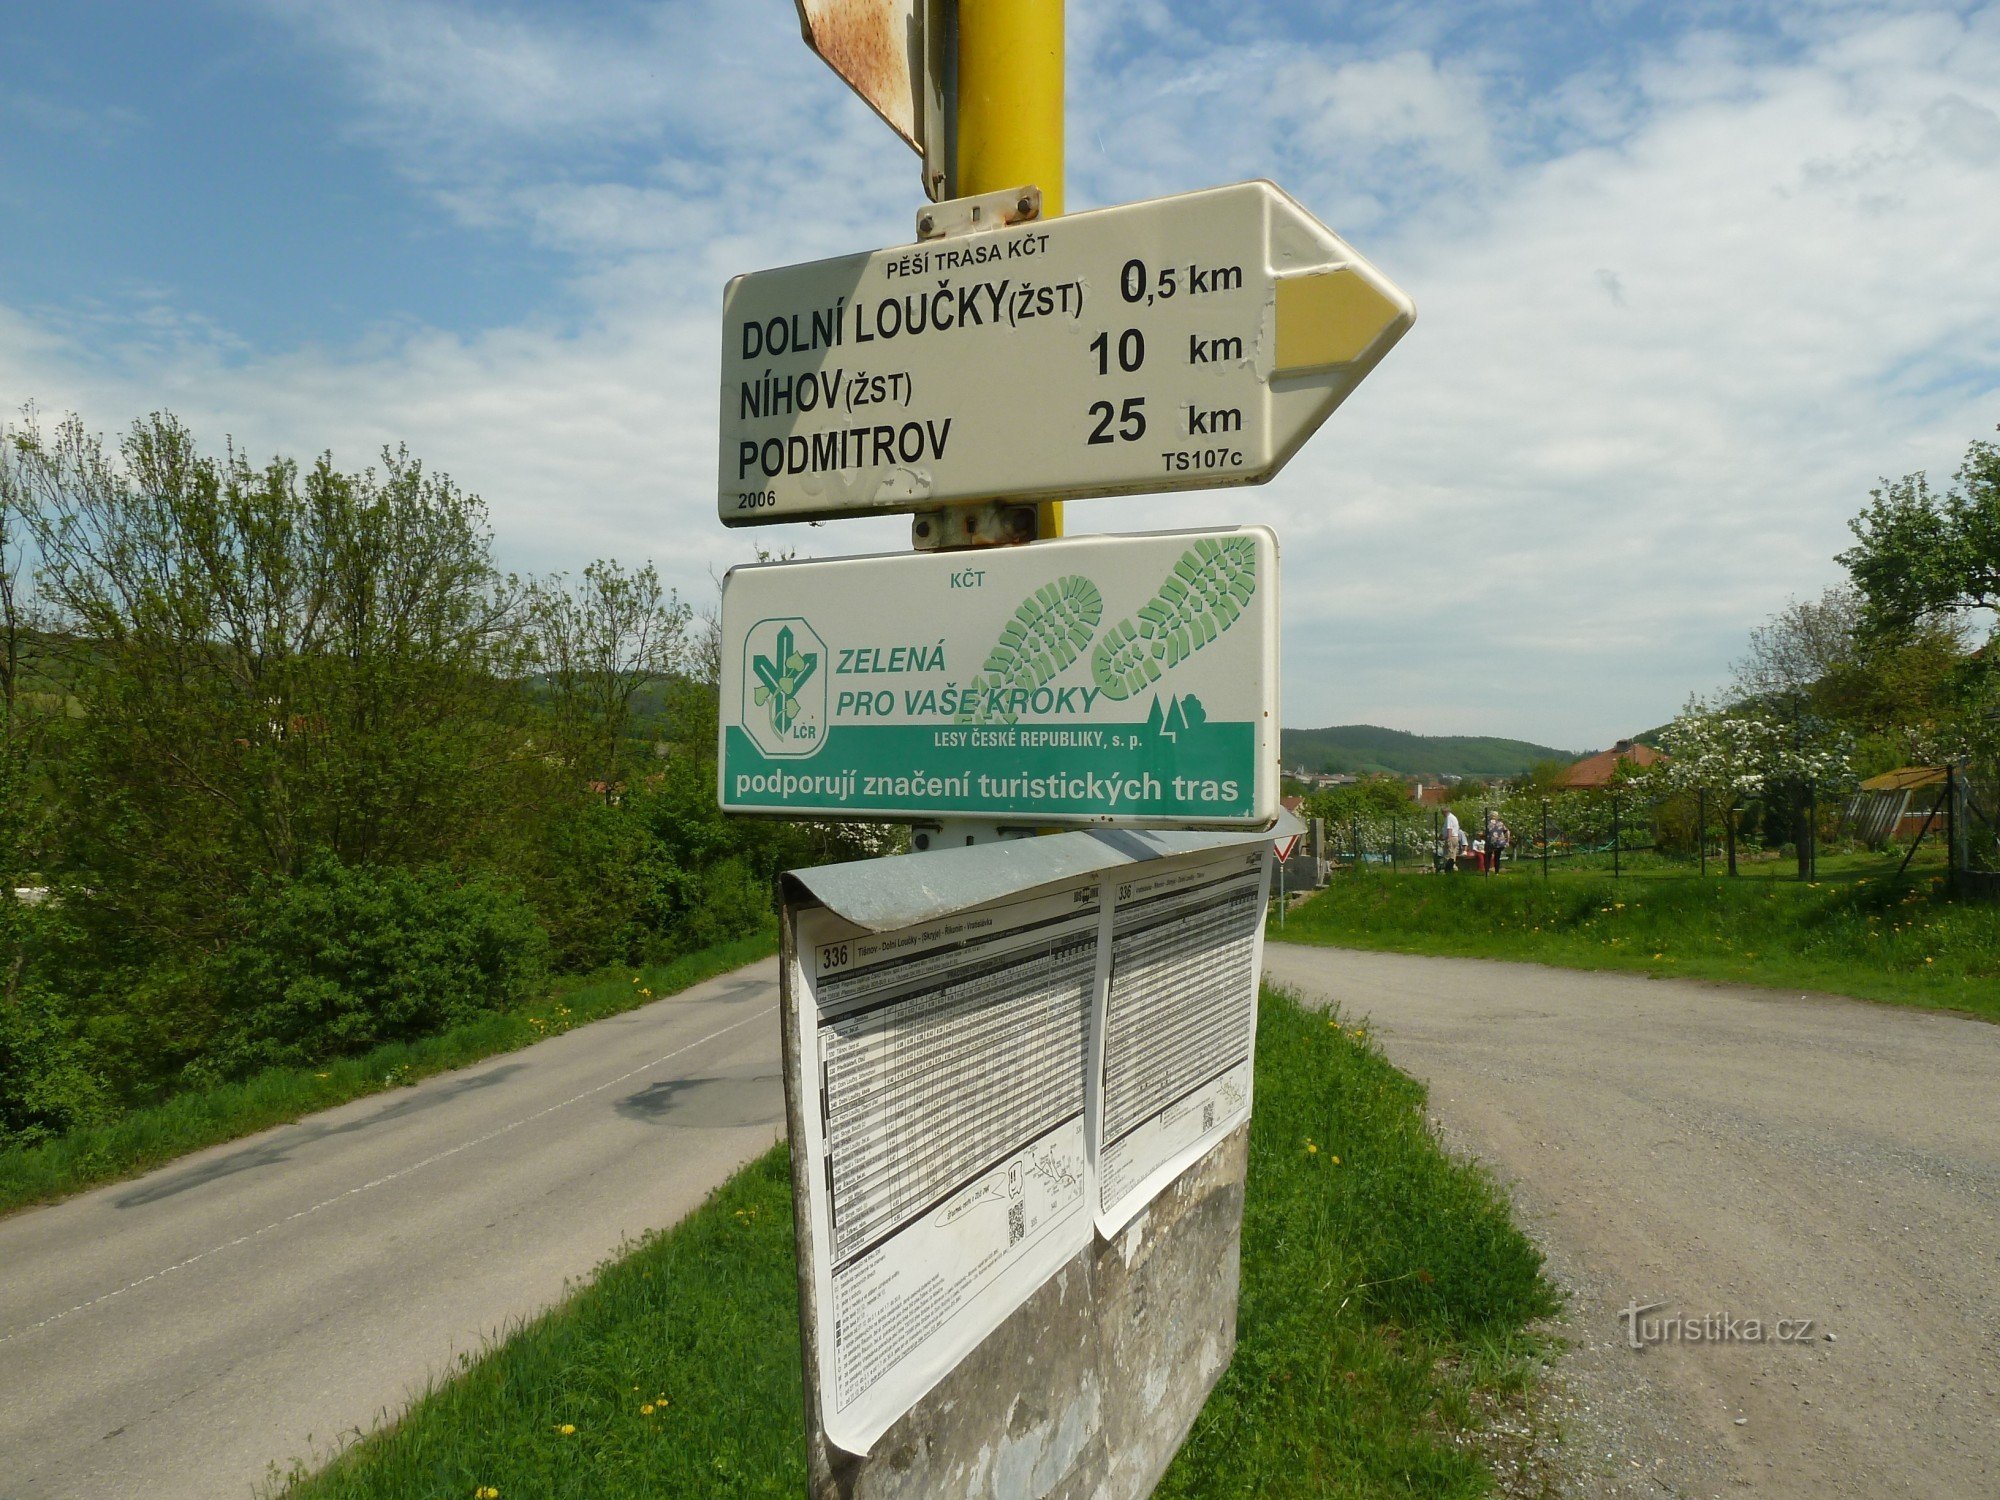 Dolní Loučky turistkorsning (korsning)